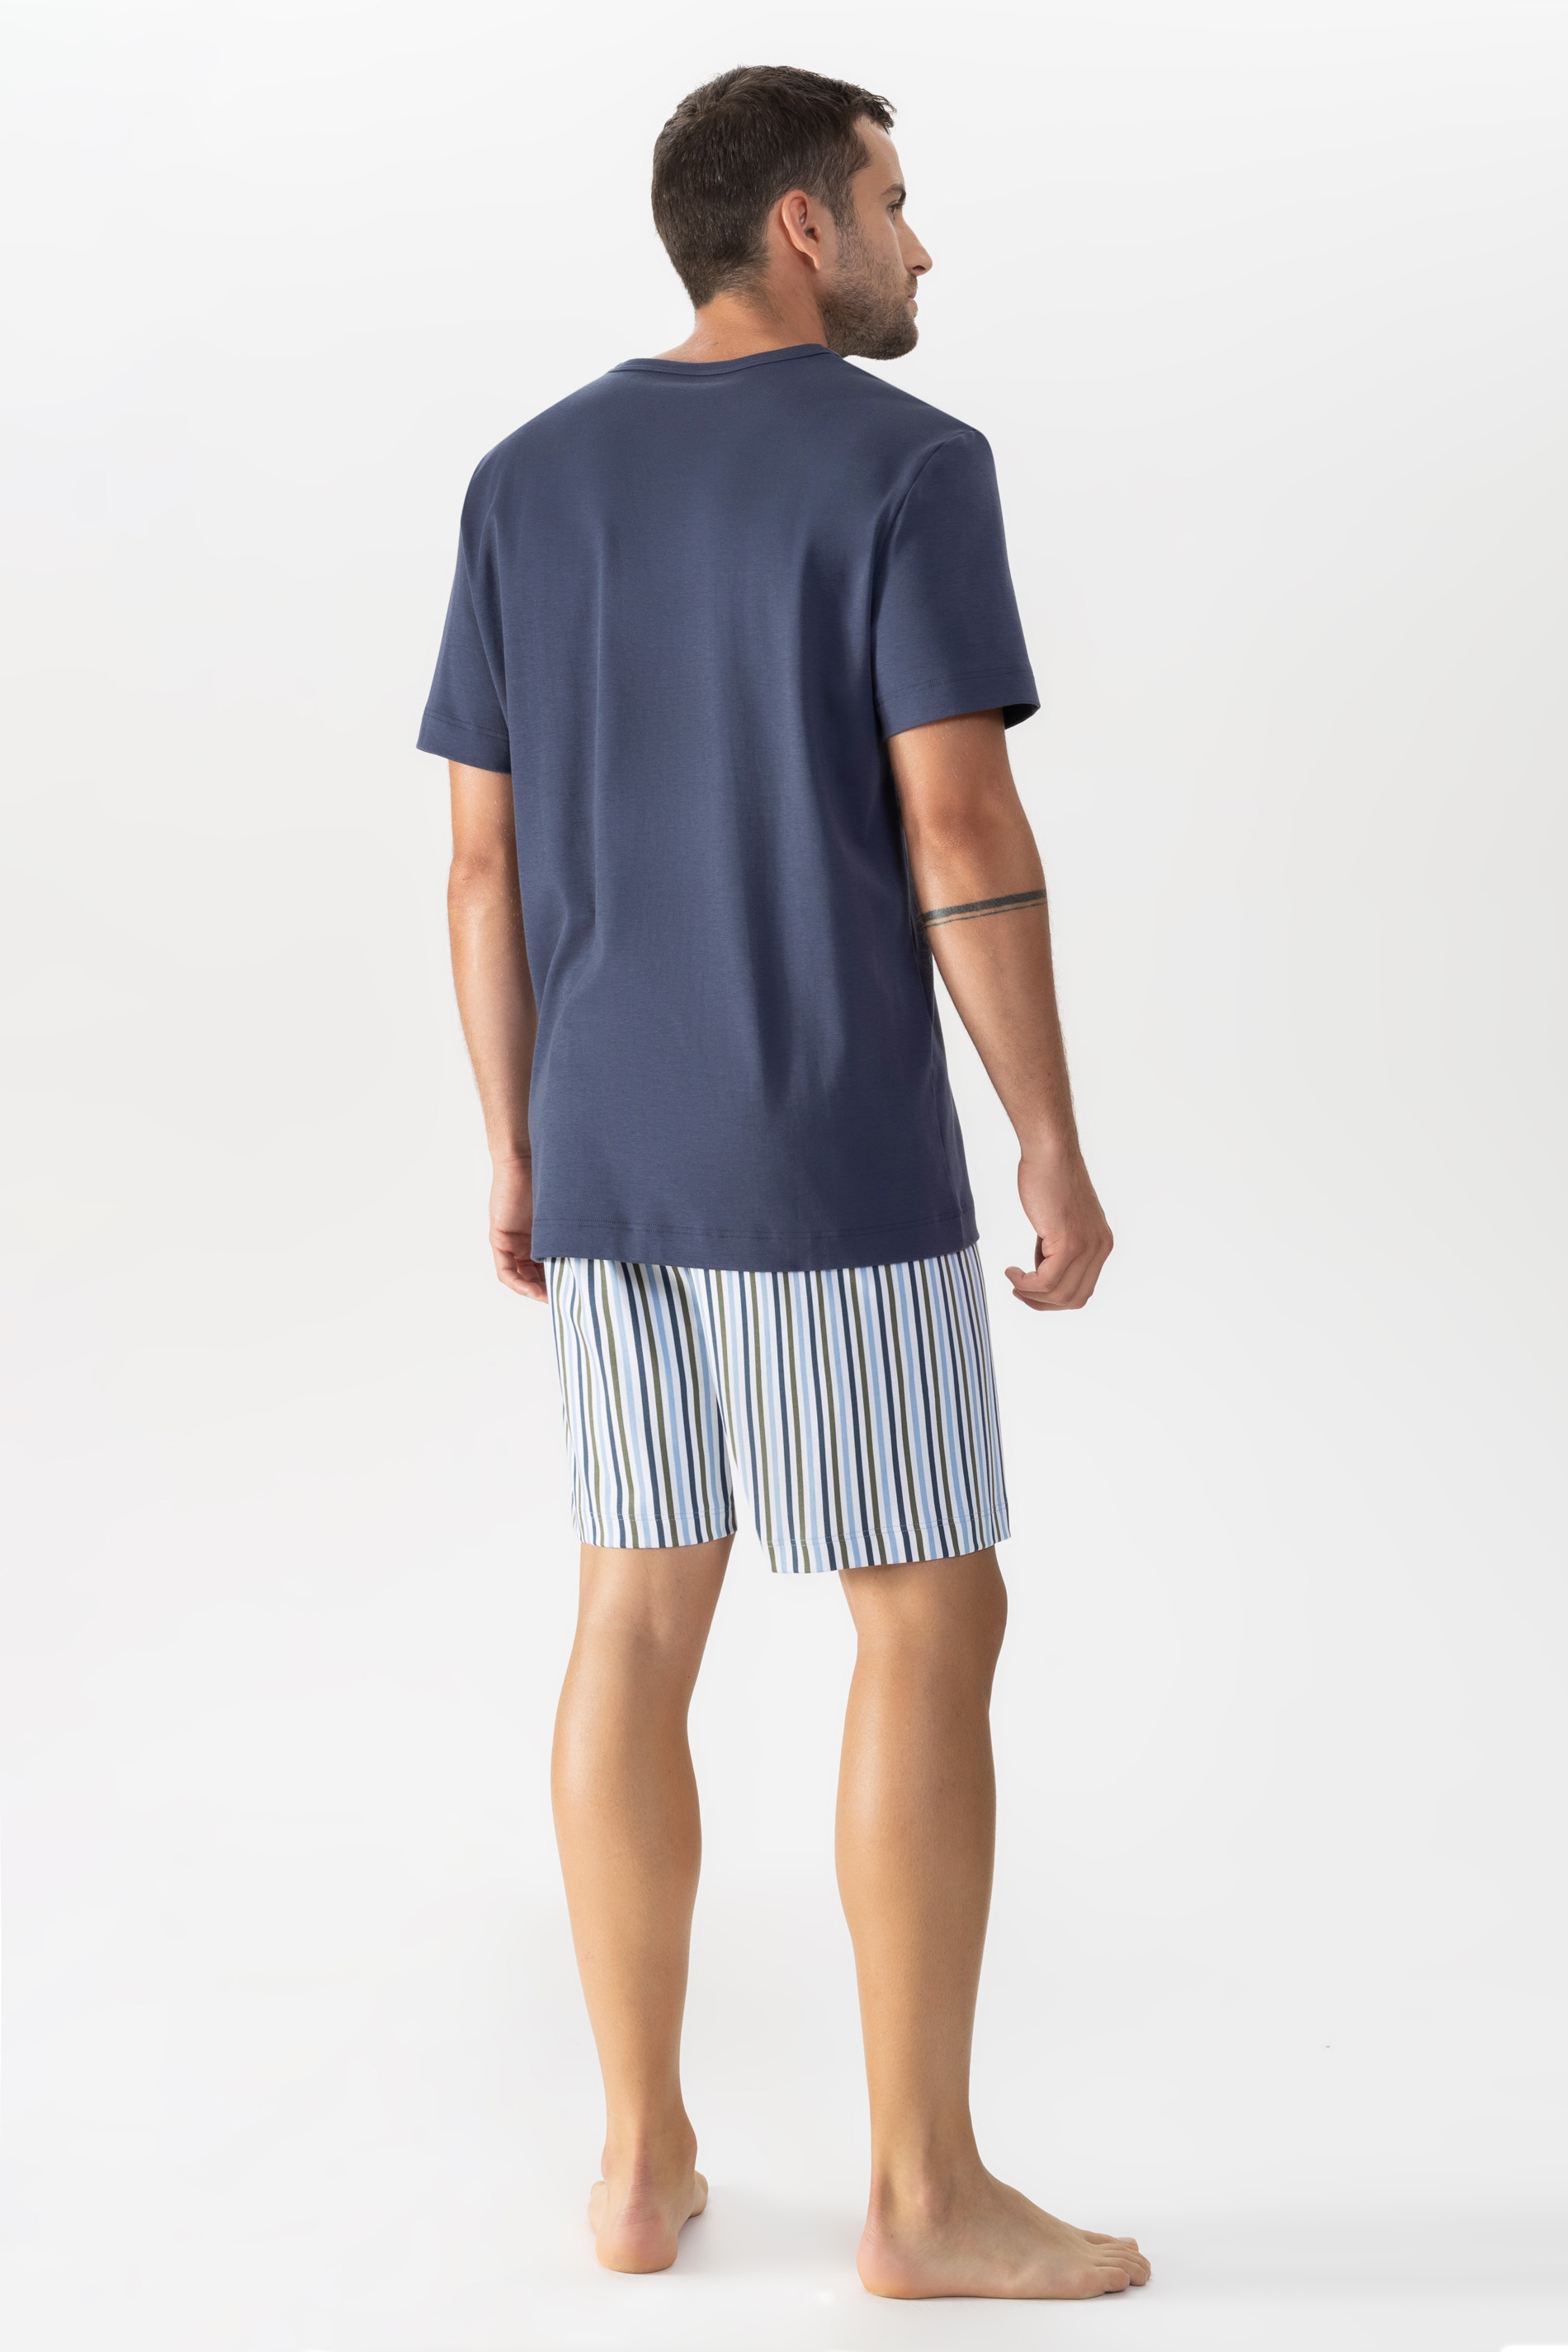 Schlafanzug Serie Light Stripes Rückansicht | mey®